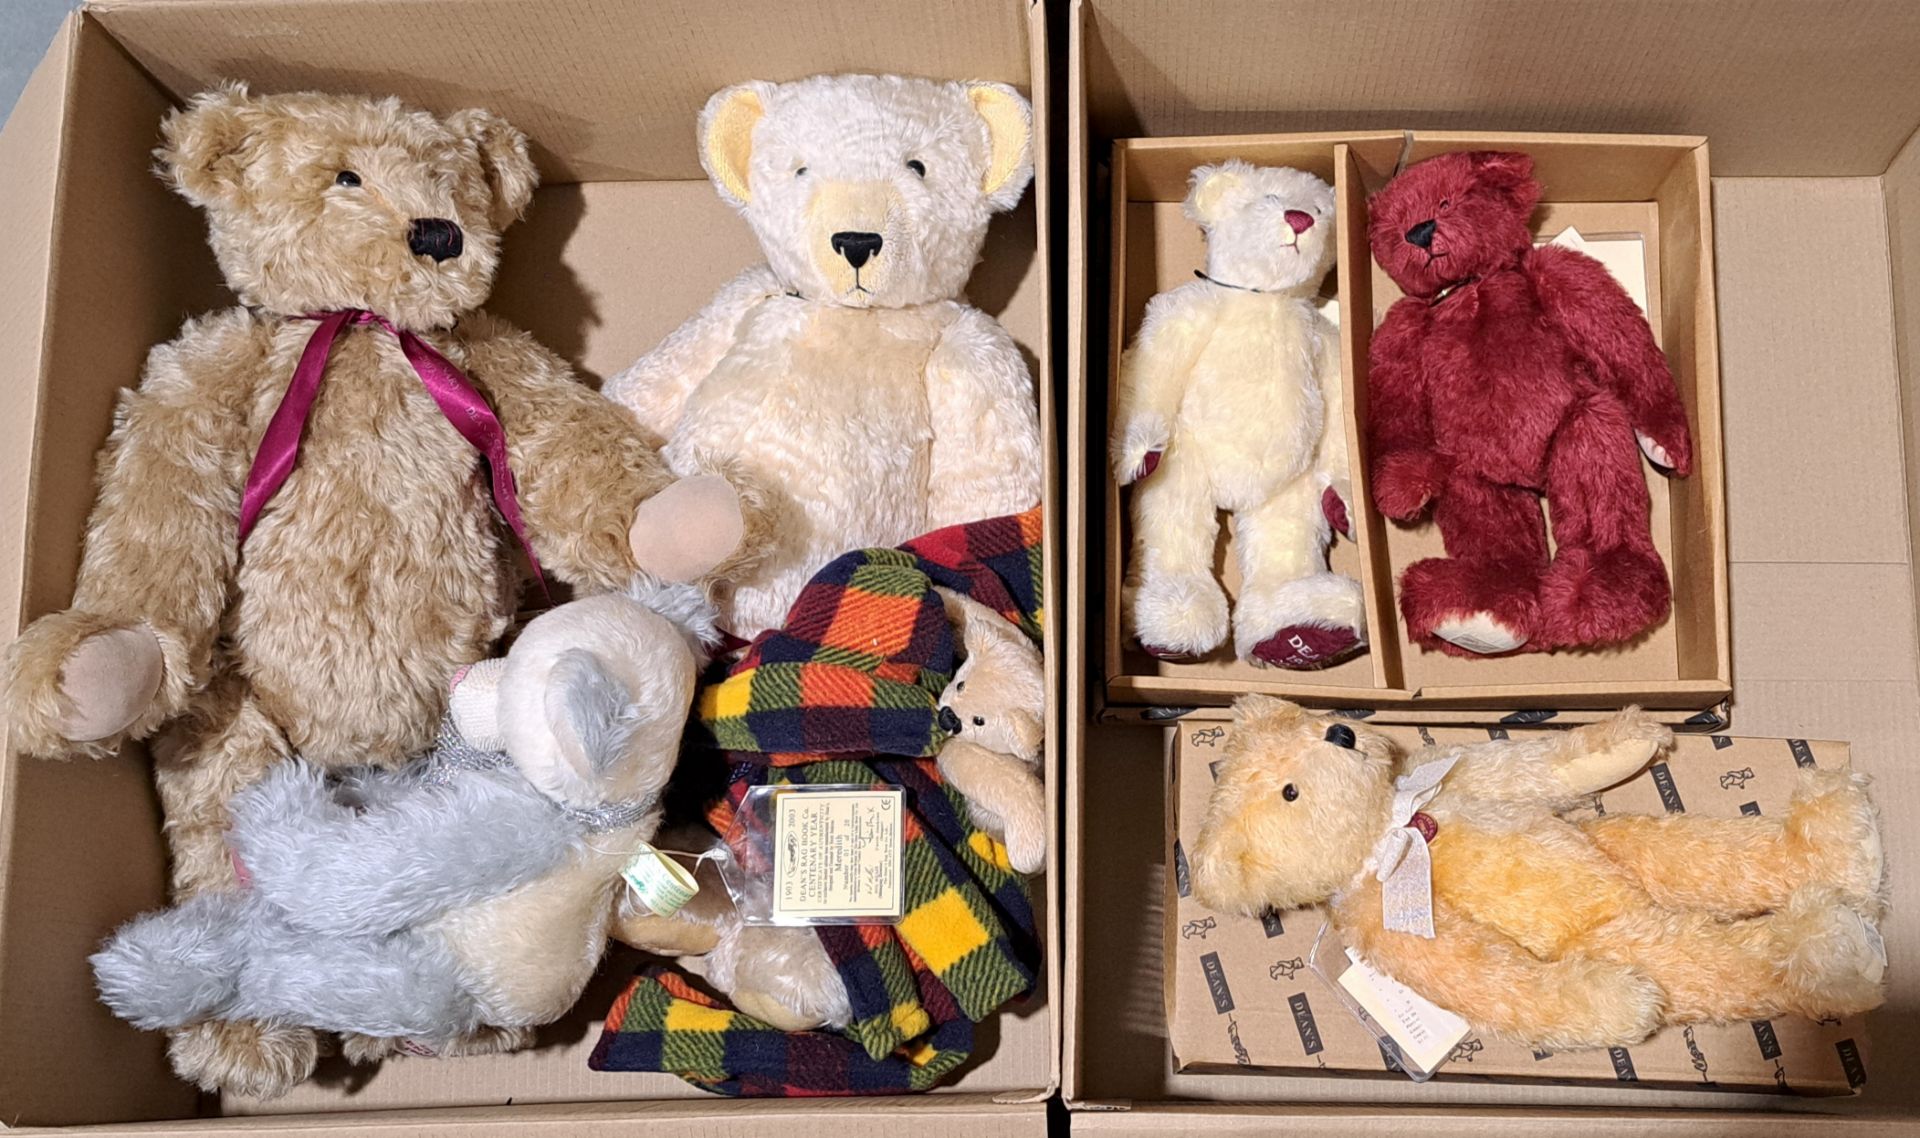 Dean's Rag Book assortment of teddy bears, including Centenary bears